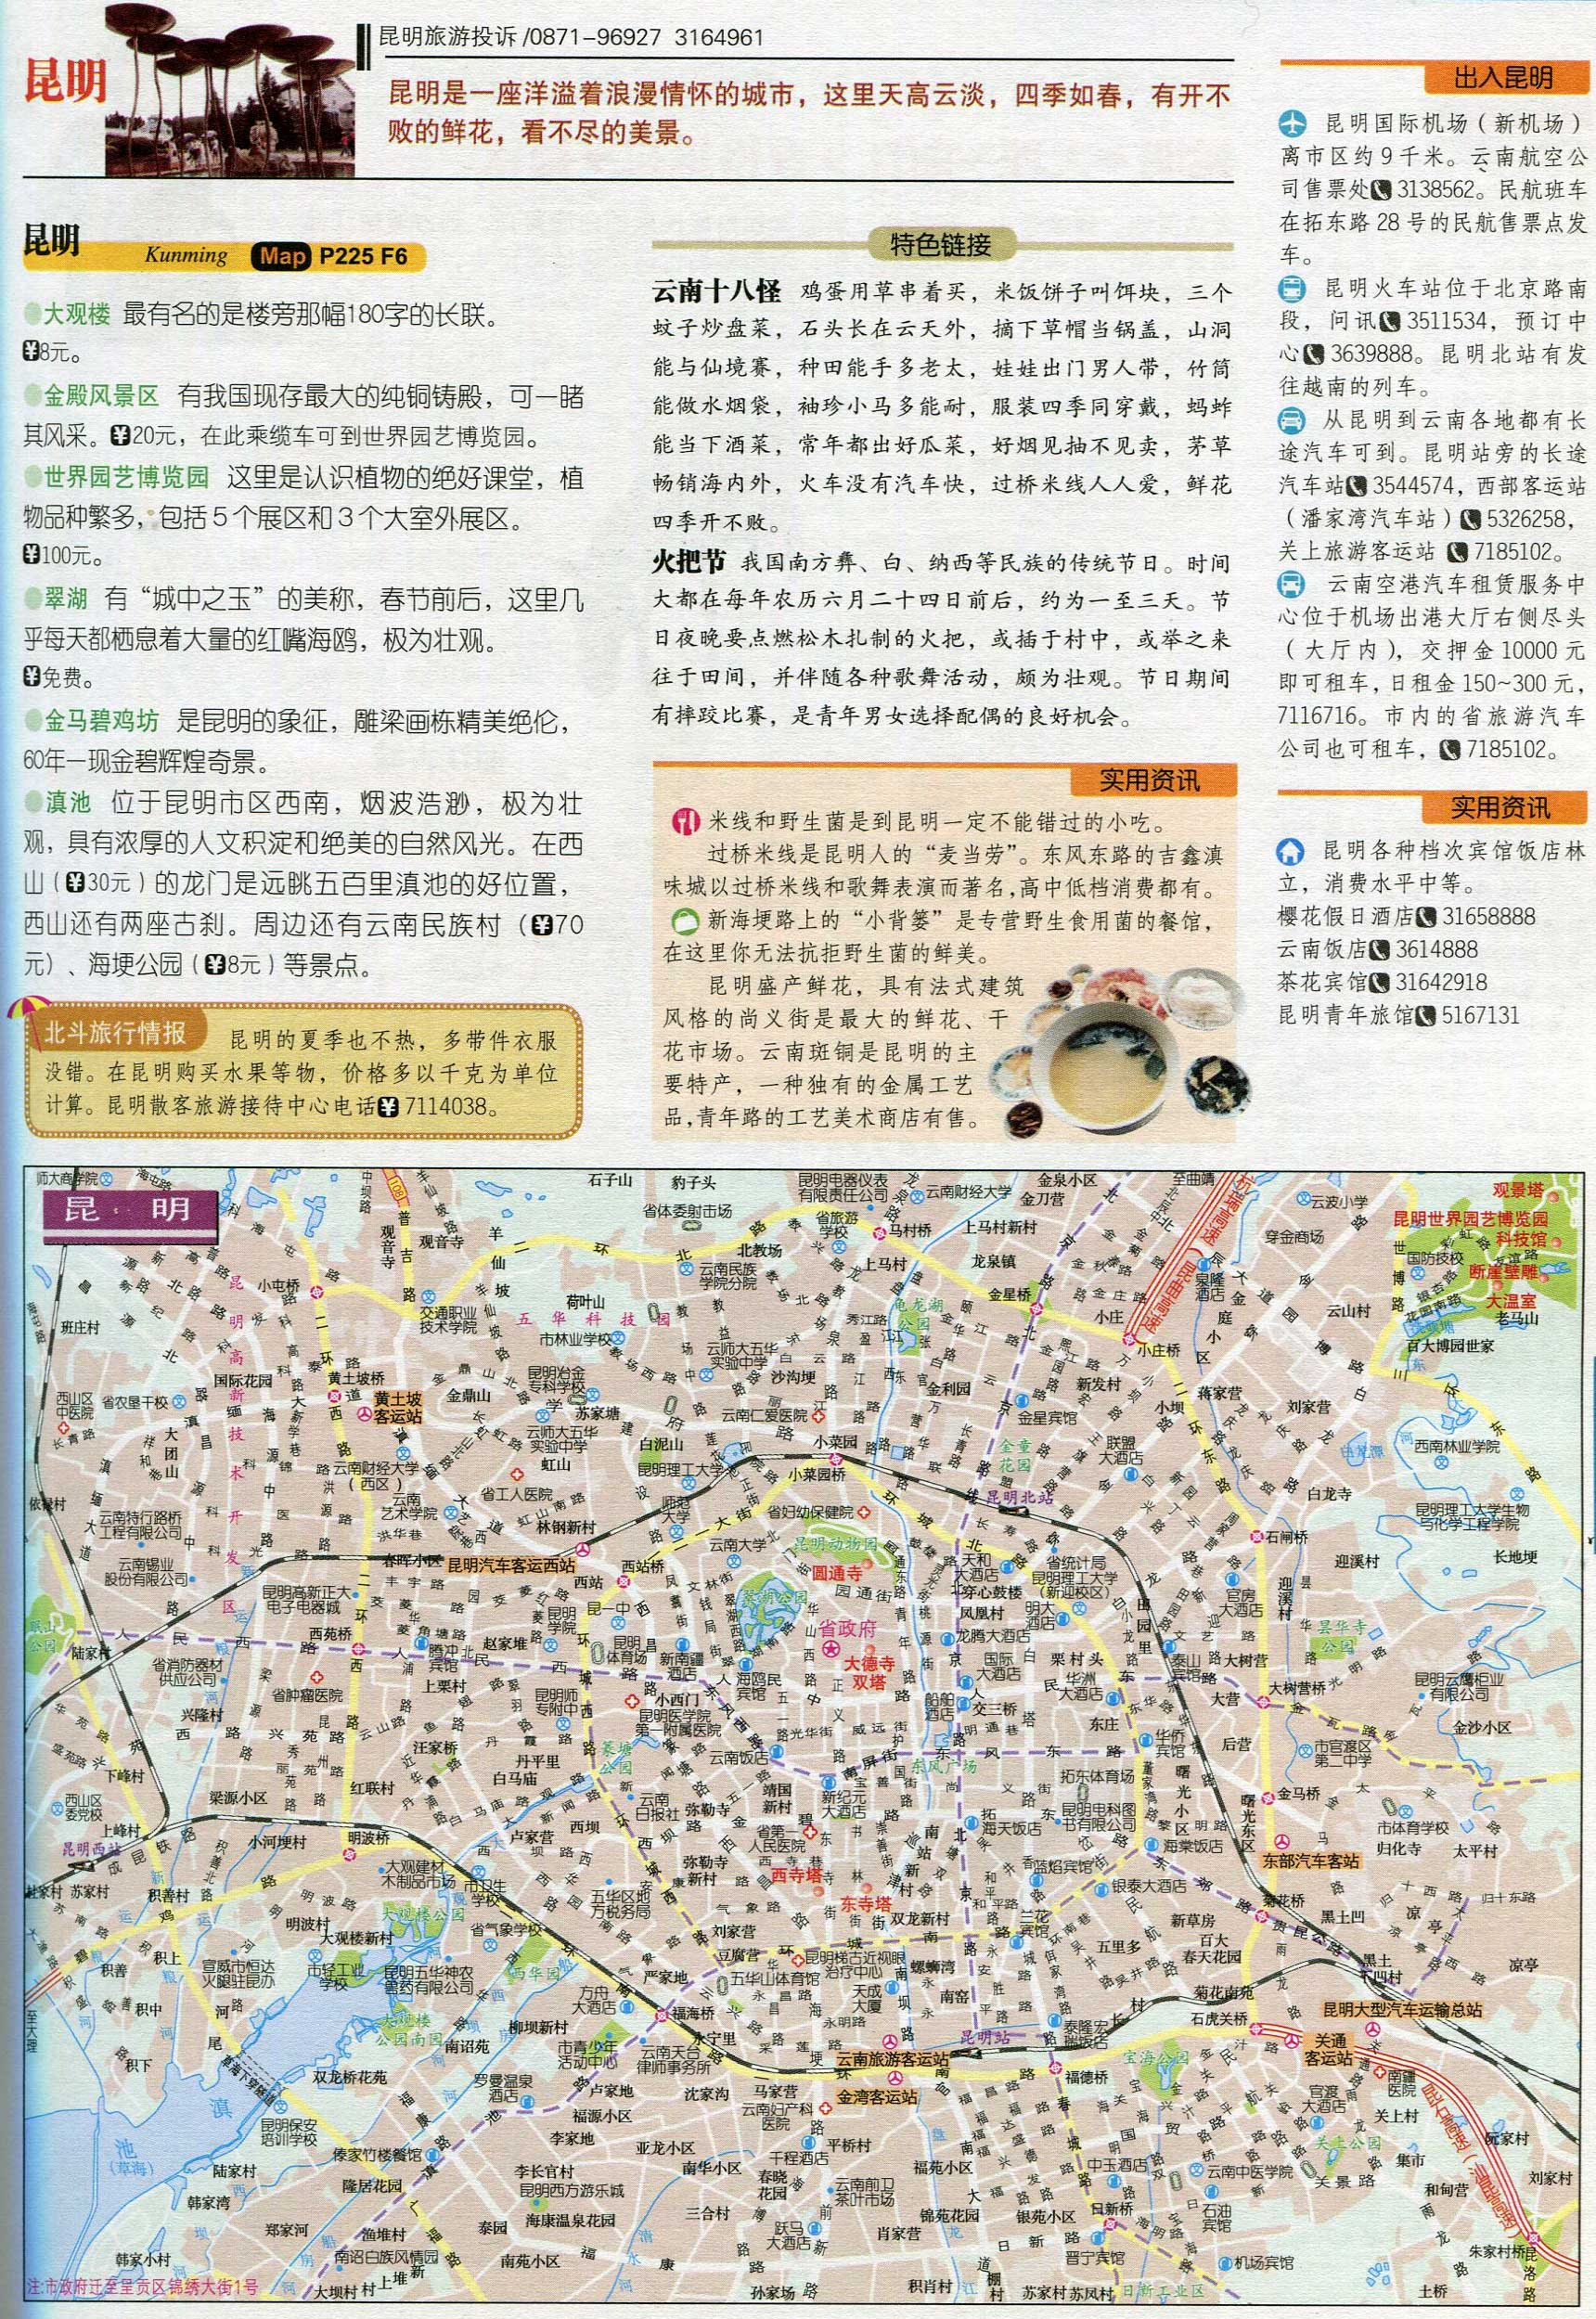 景点分布图  卫星地图  城市概貌地图 上一张地图: 贵州旅游线路图图片